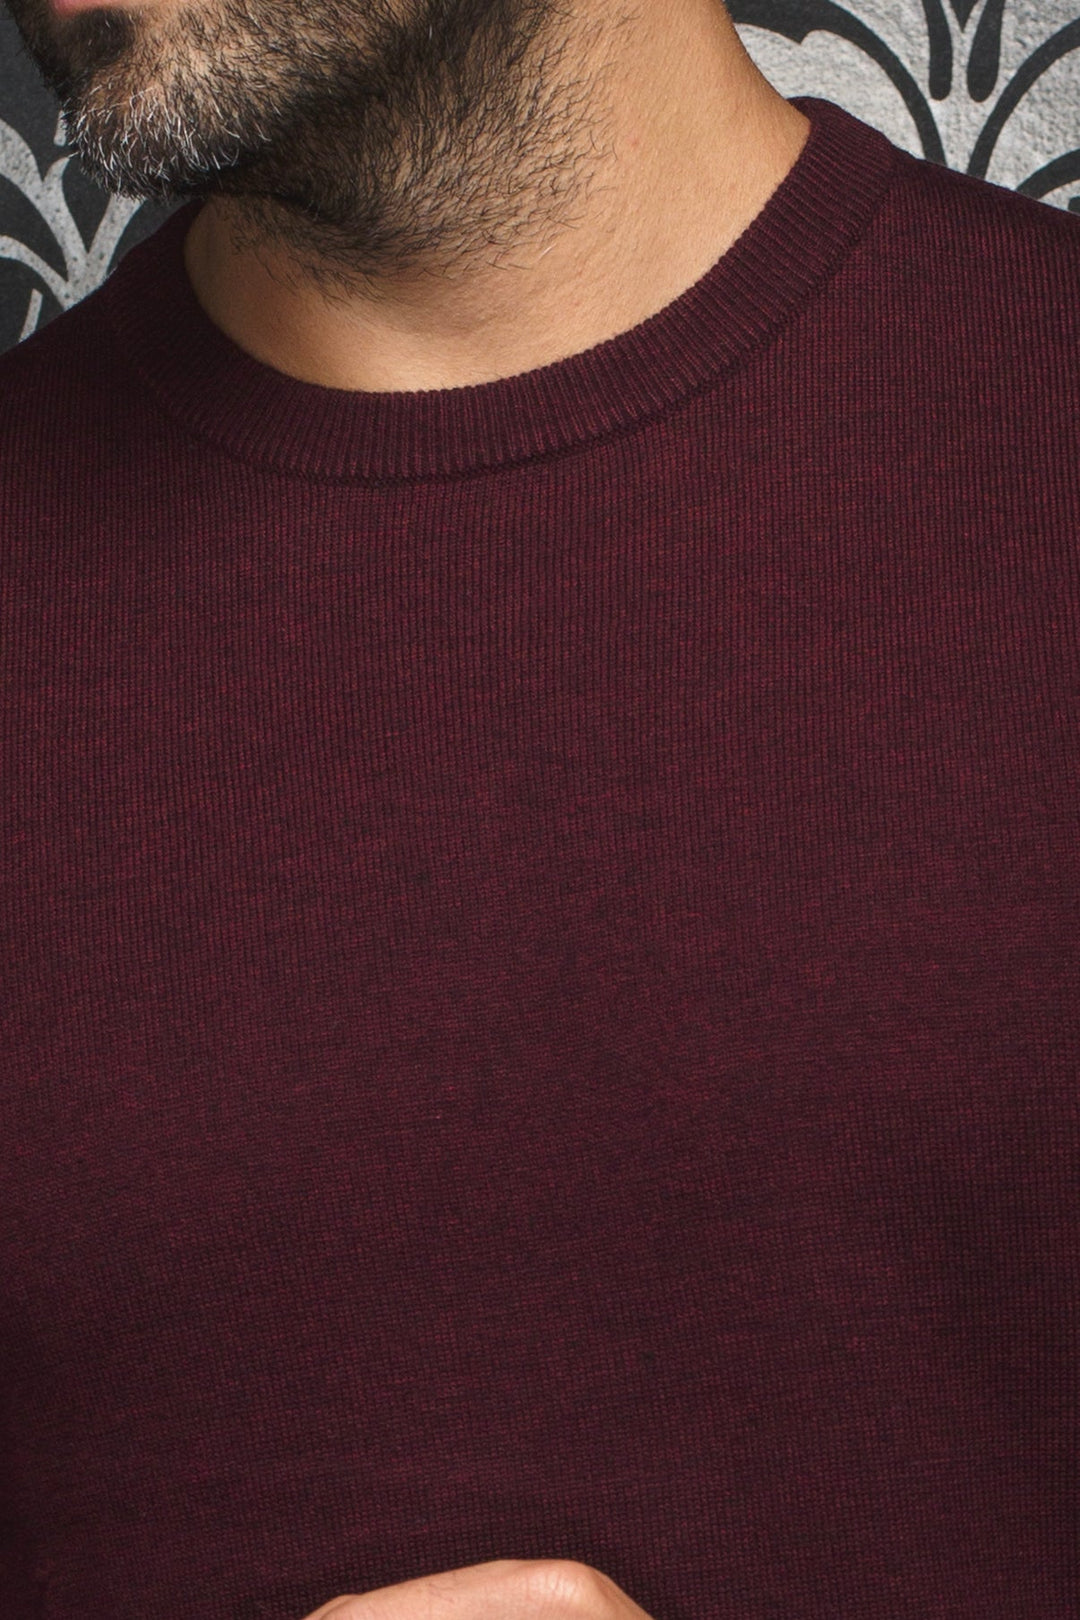 Marini burgundy merino round neck sweater